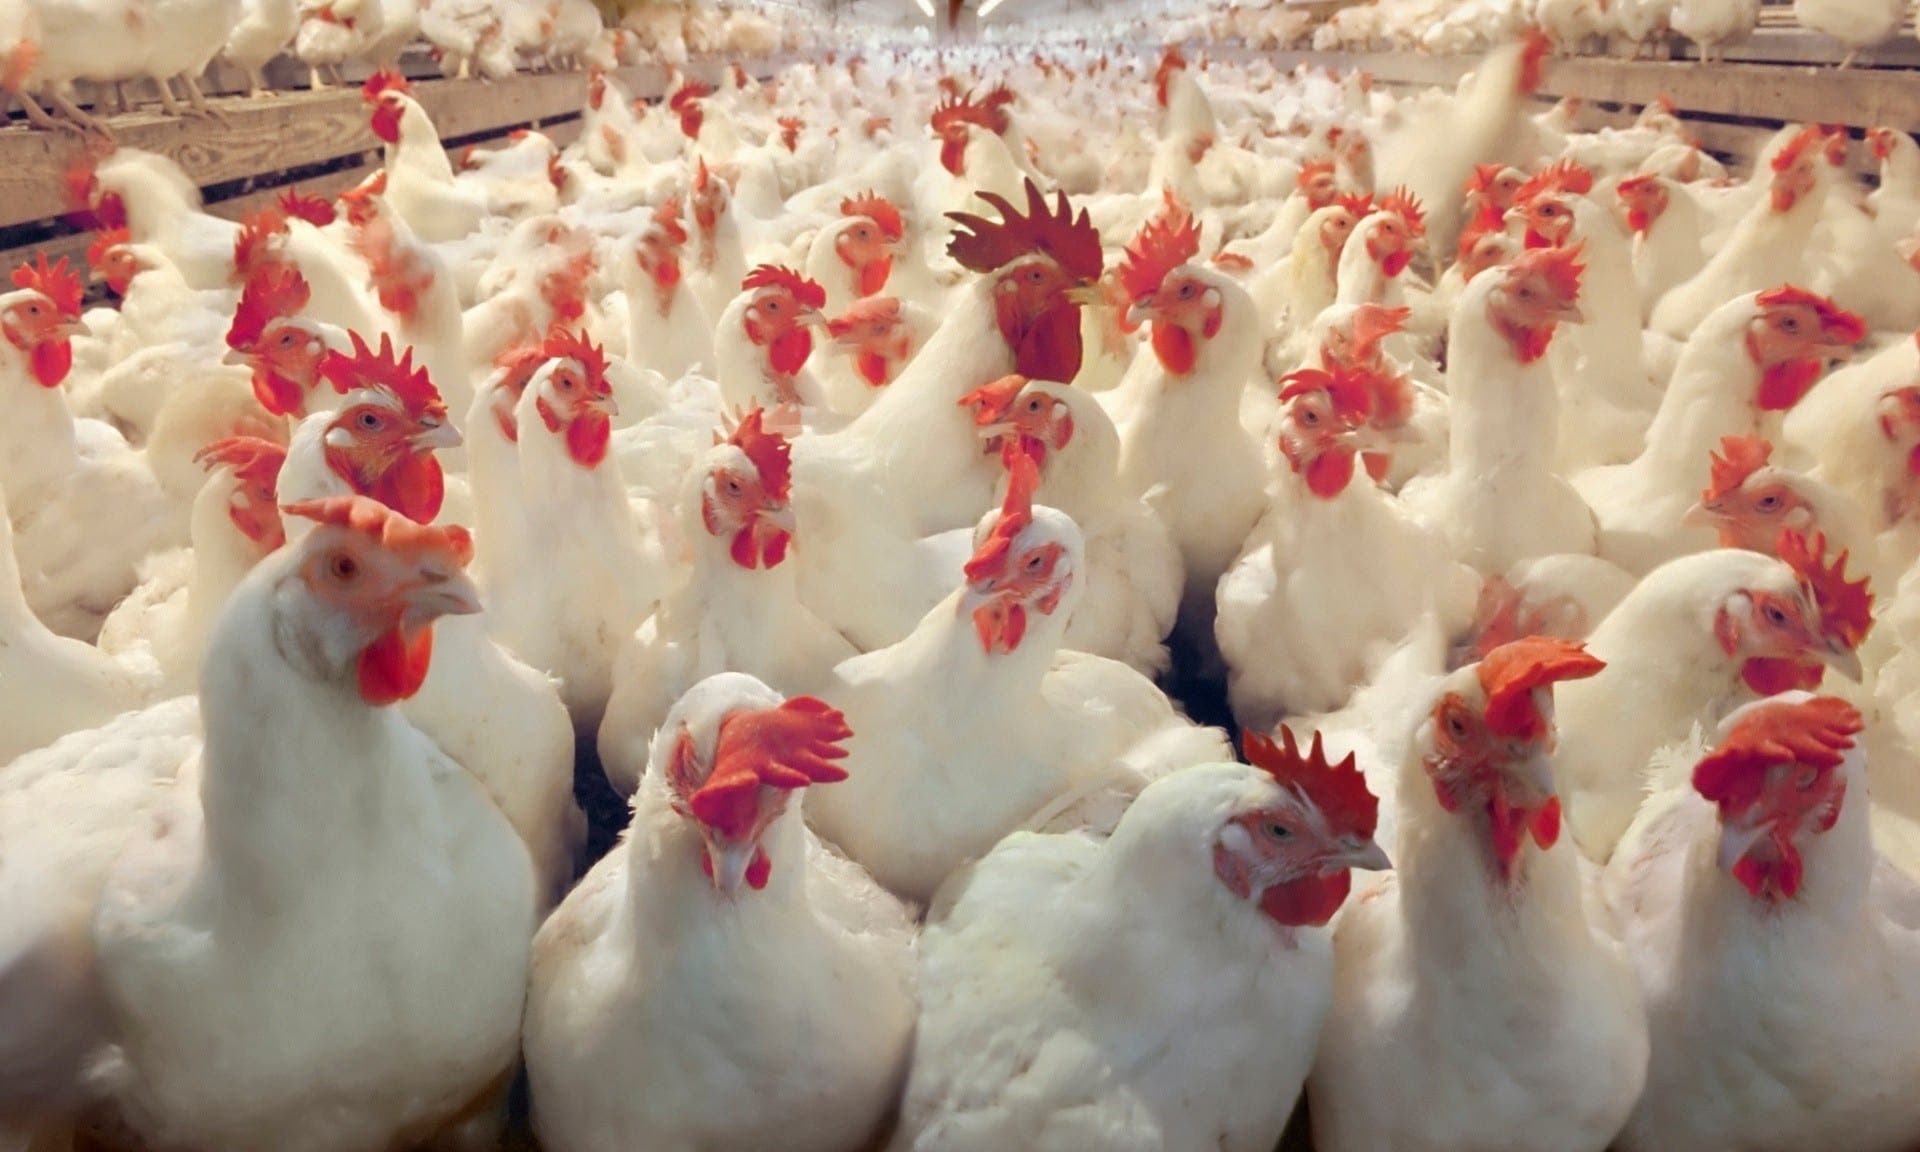 بثمن فاق 28 درهم ،أسعار الدجاج تقفز إلى مستويات قياسية بالمغرب